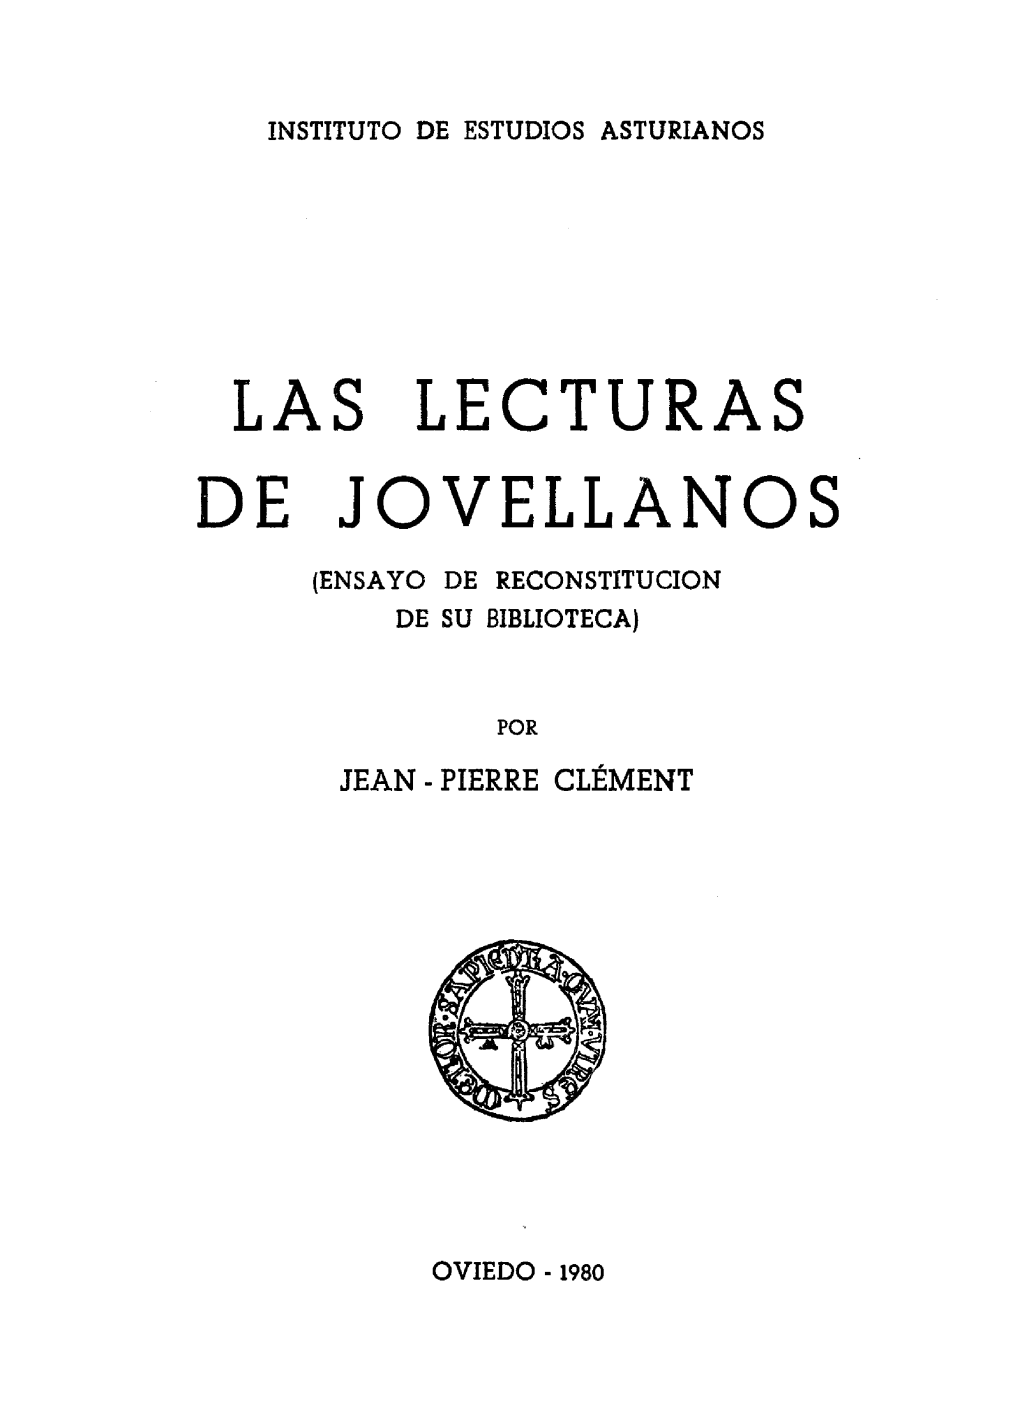 Las Lecturas De Jovellanos (Ensayo De Reconstitución De Su Biblioteca)